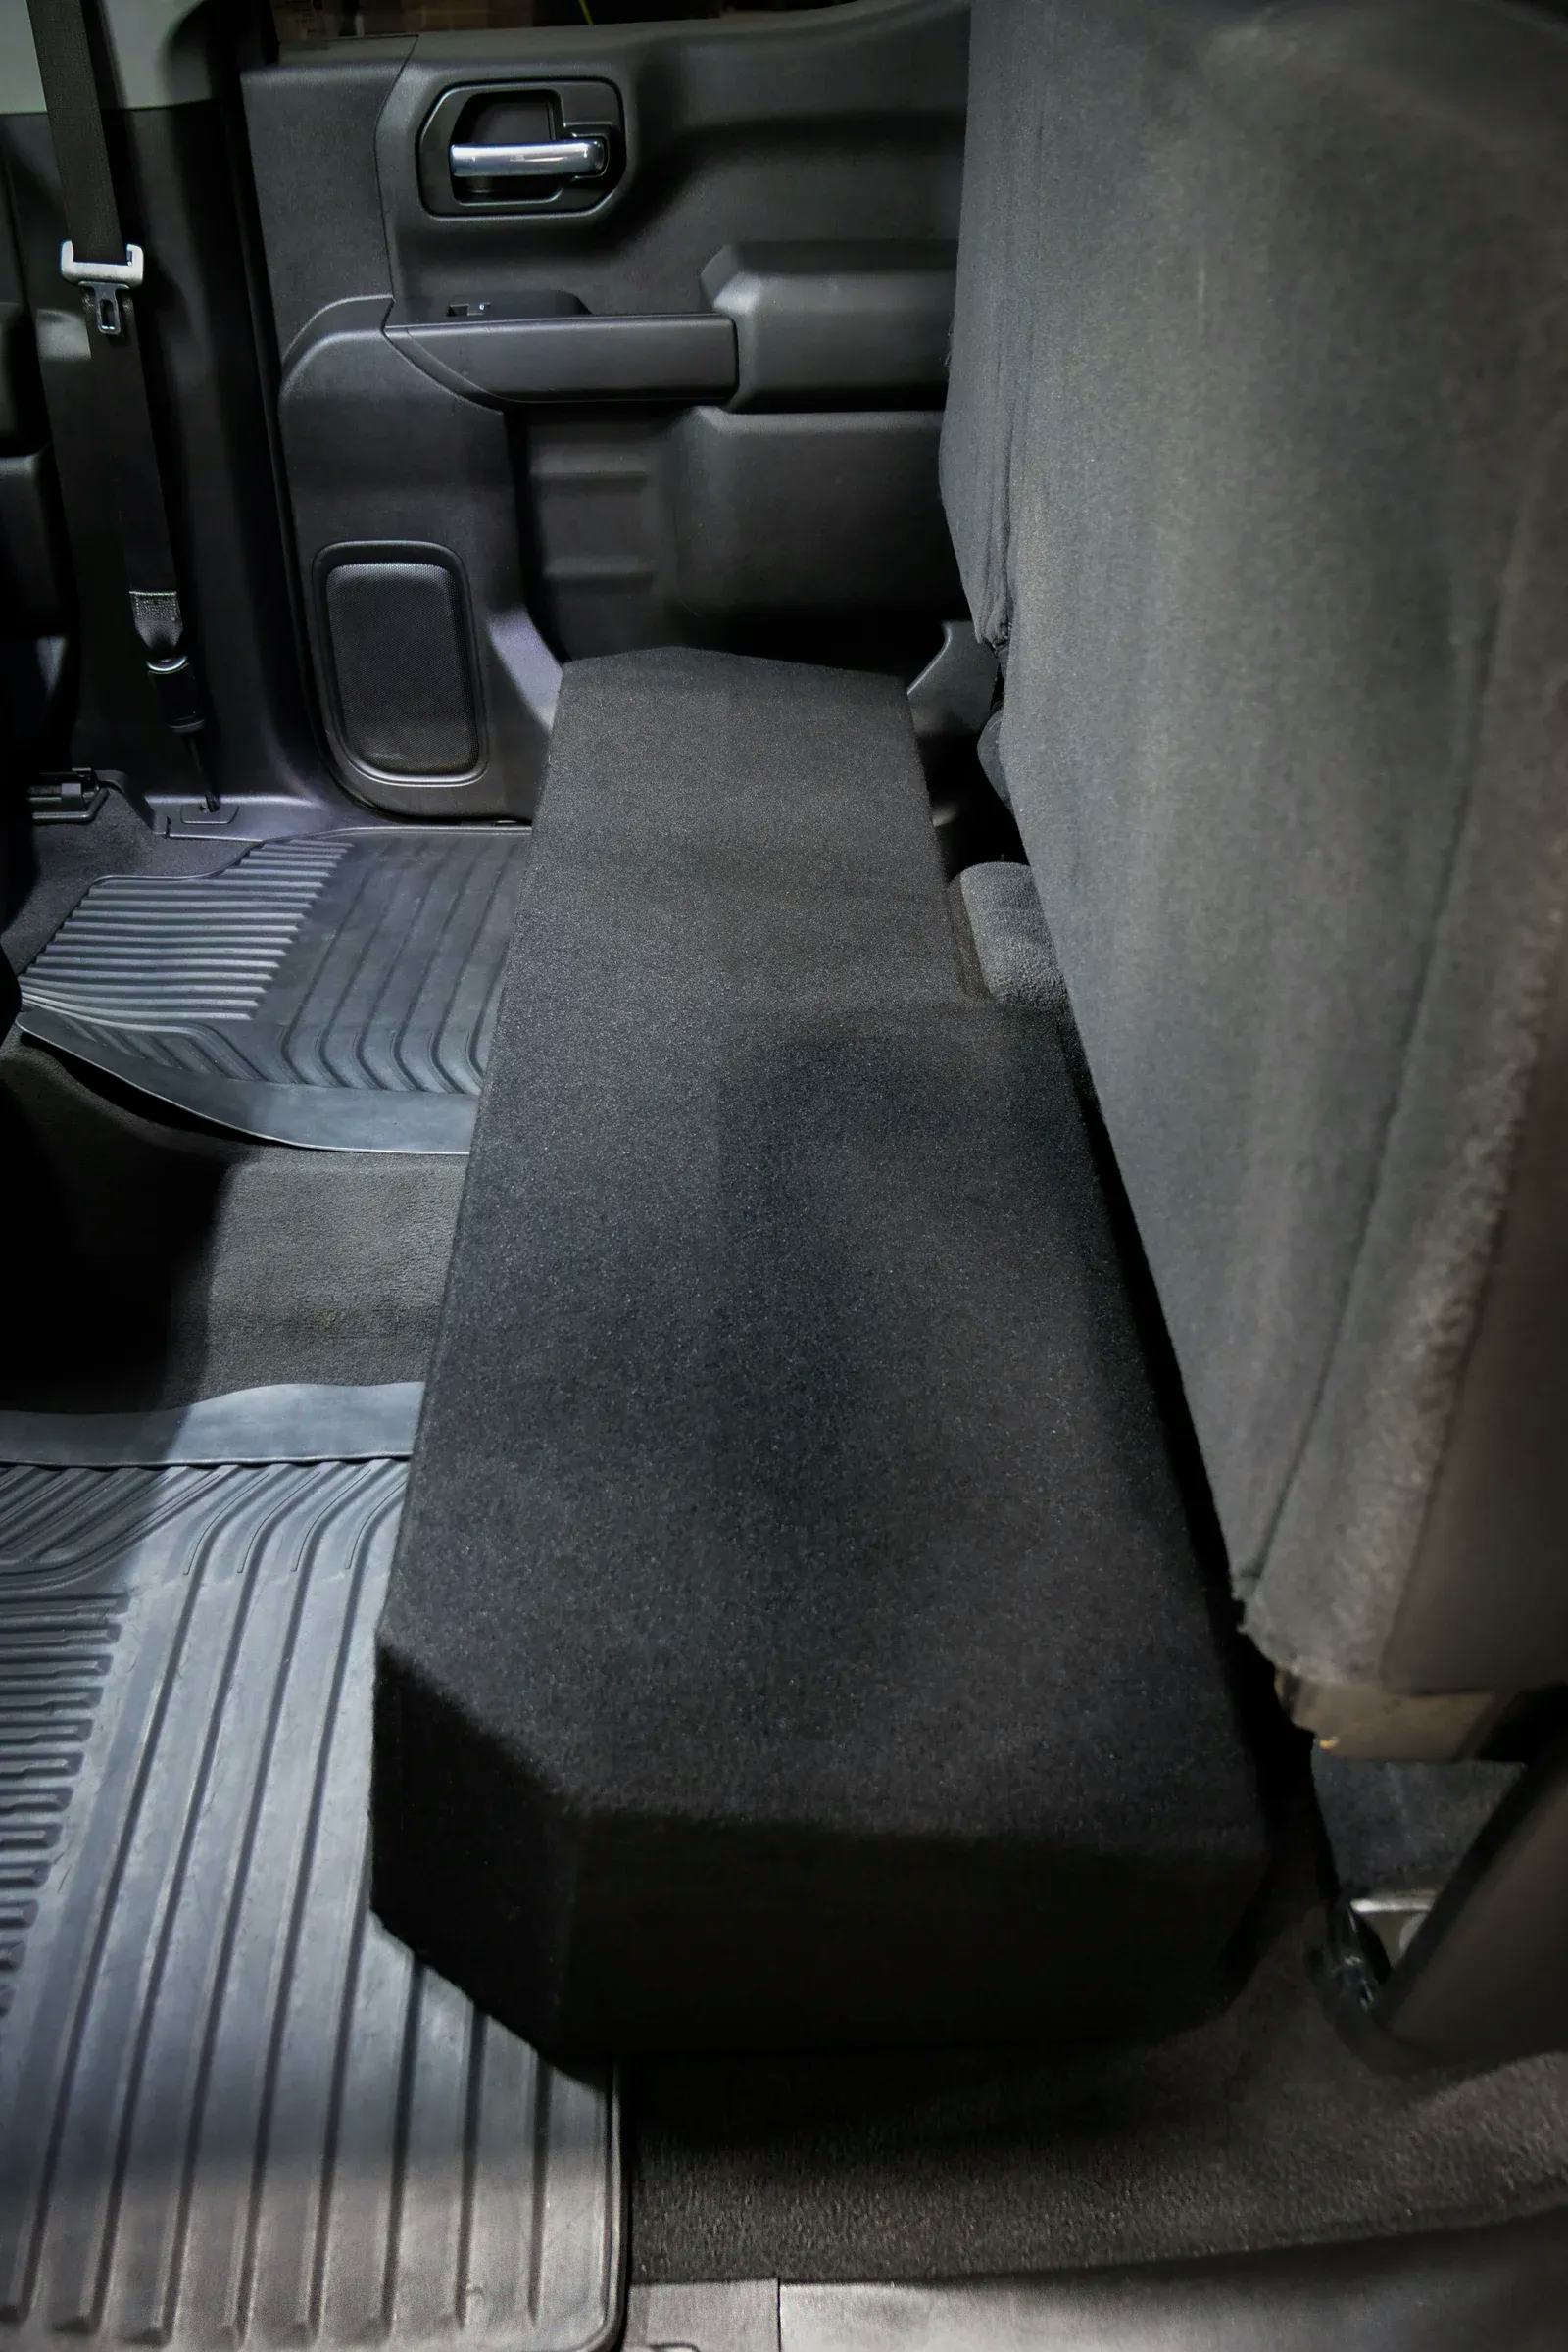 2019-2024 Chevy Silverado & GMC Sierra Crew Cab Compatible Dual 10" Ported Subwoofer Enclosure #13